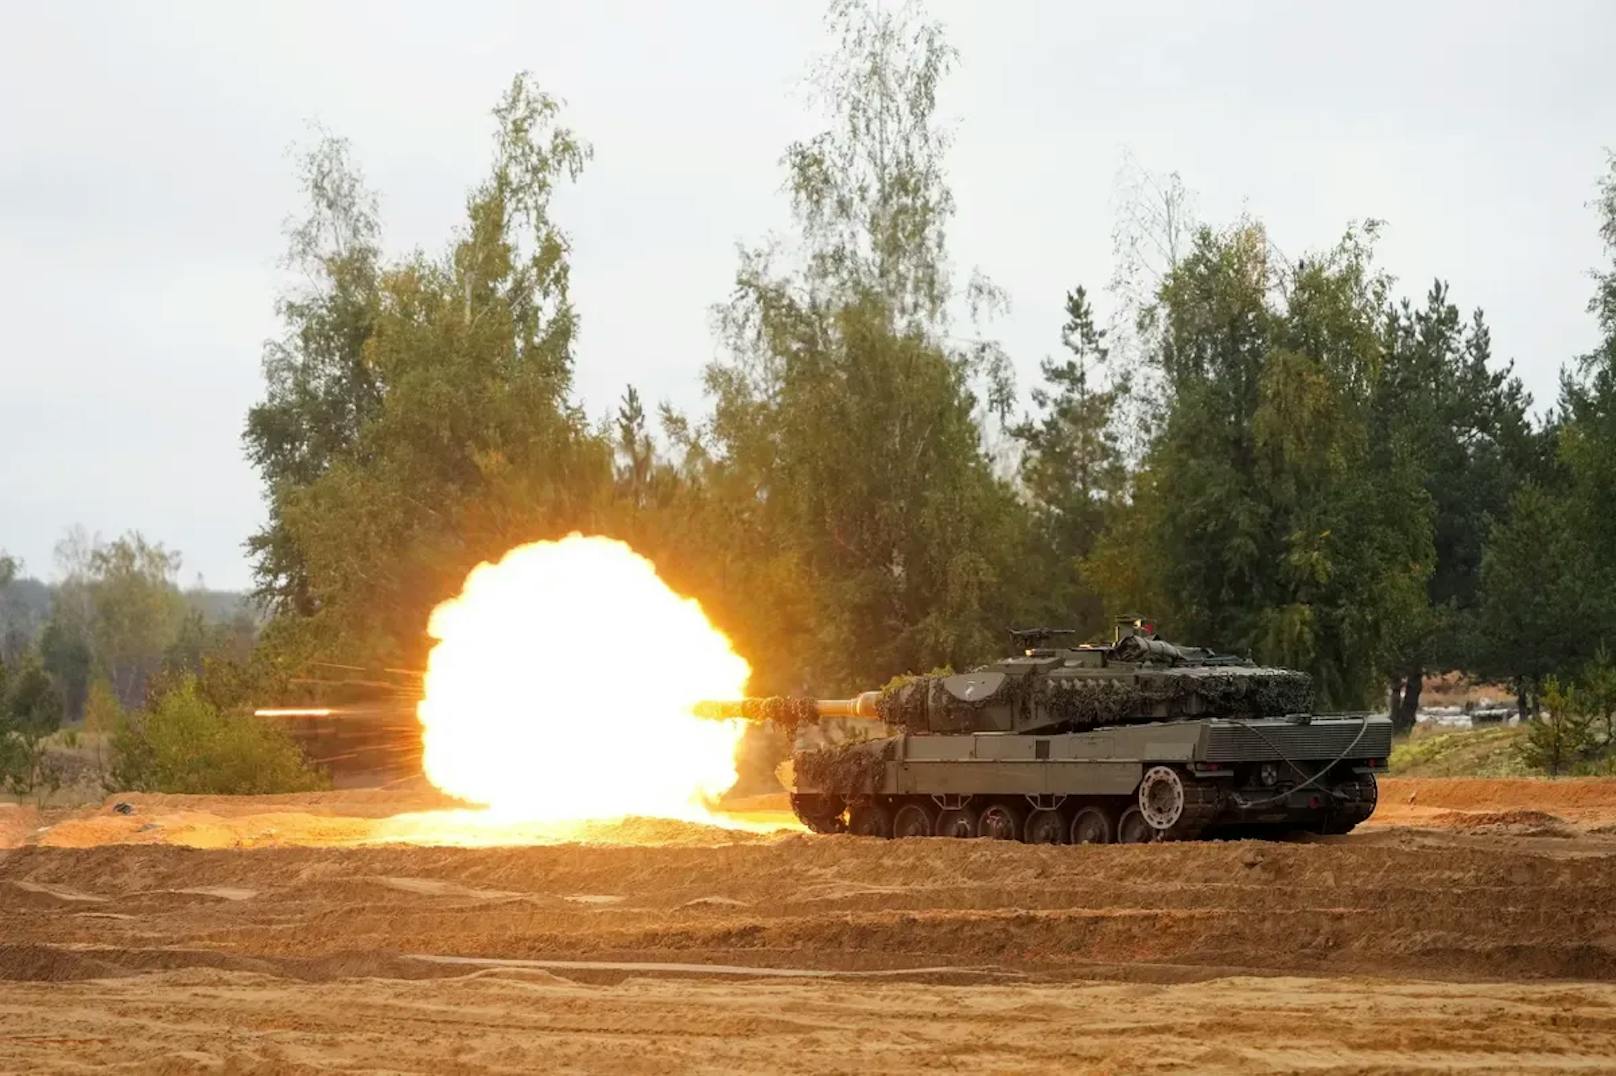 Der deutsche Kampfpanzer kann die Hülle eines sowjetischen T-72-Panzers durchschlagen, den die Russen massiv in der Ukraine einsetzen.